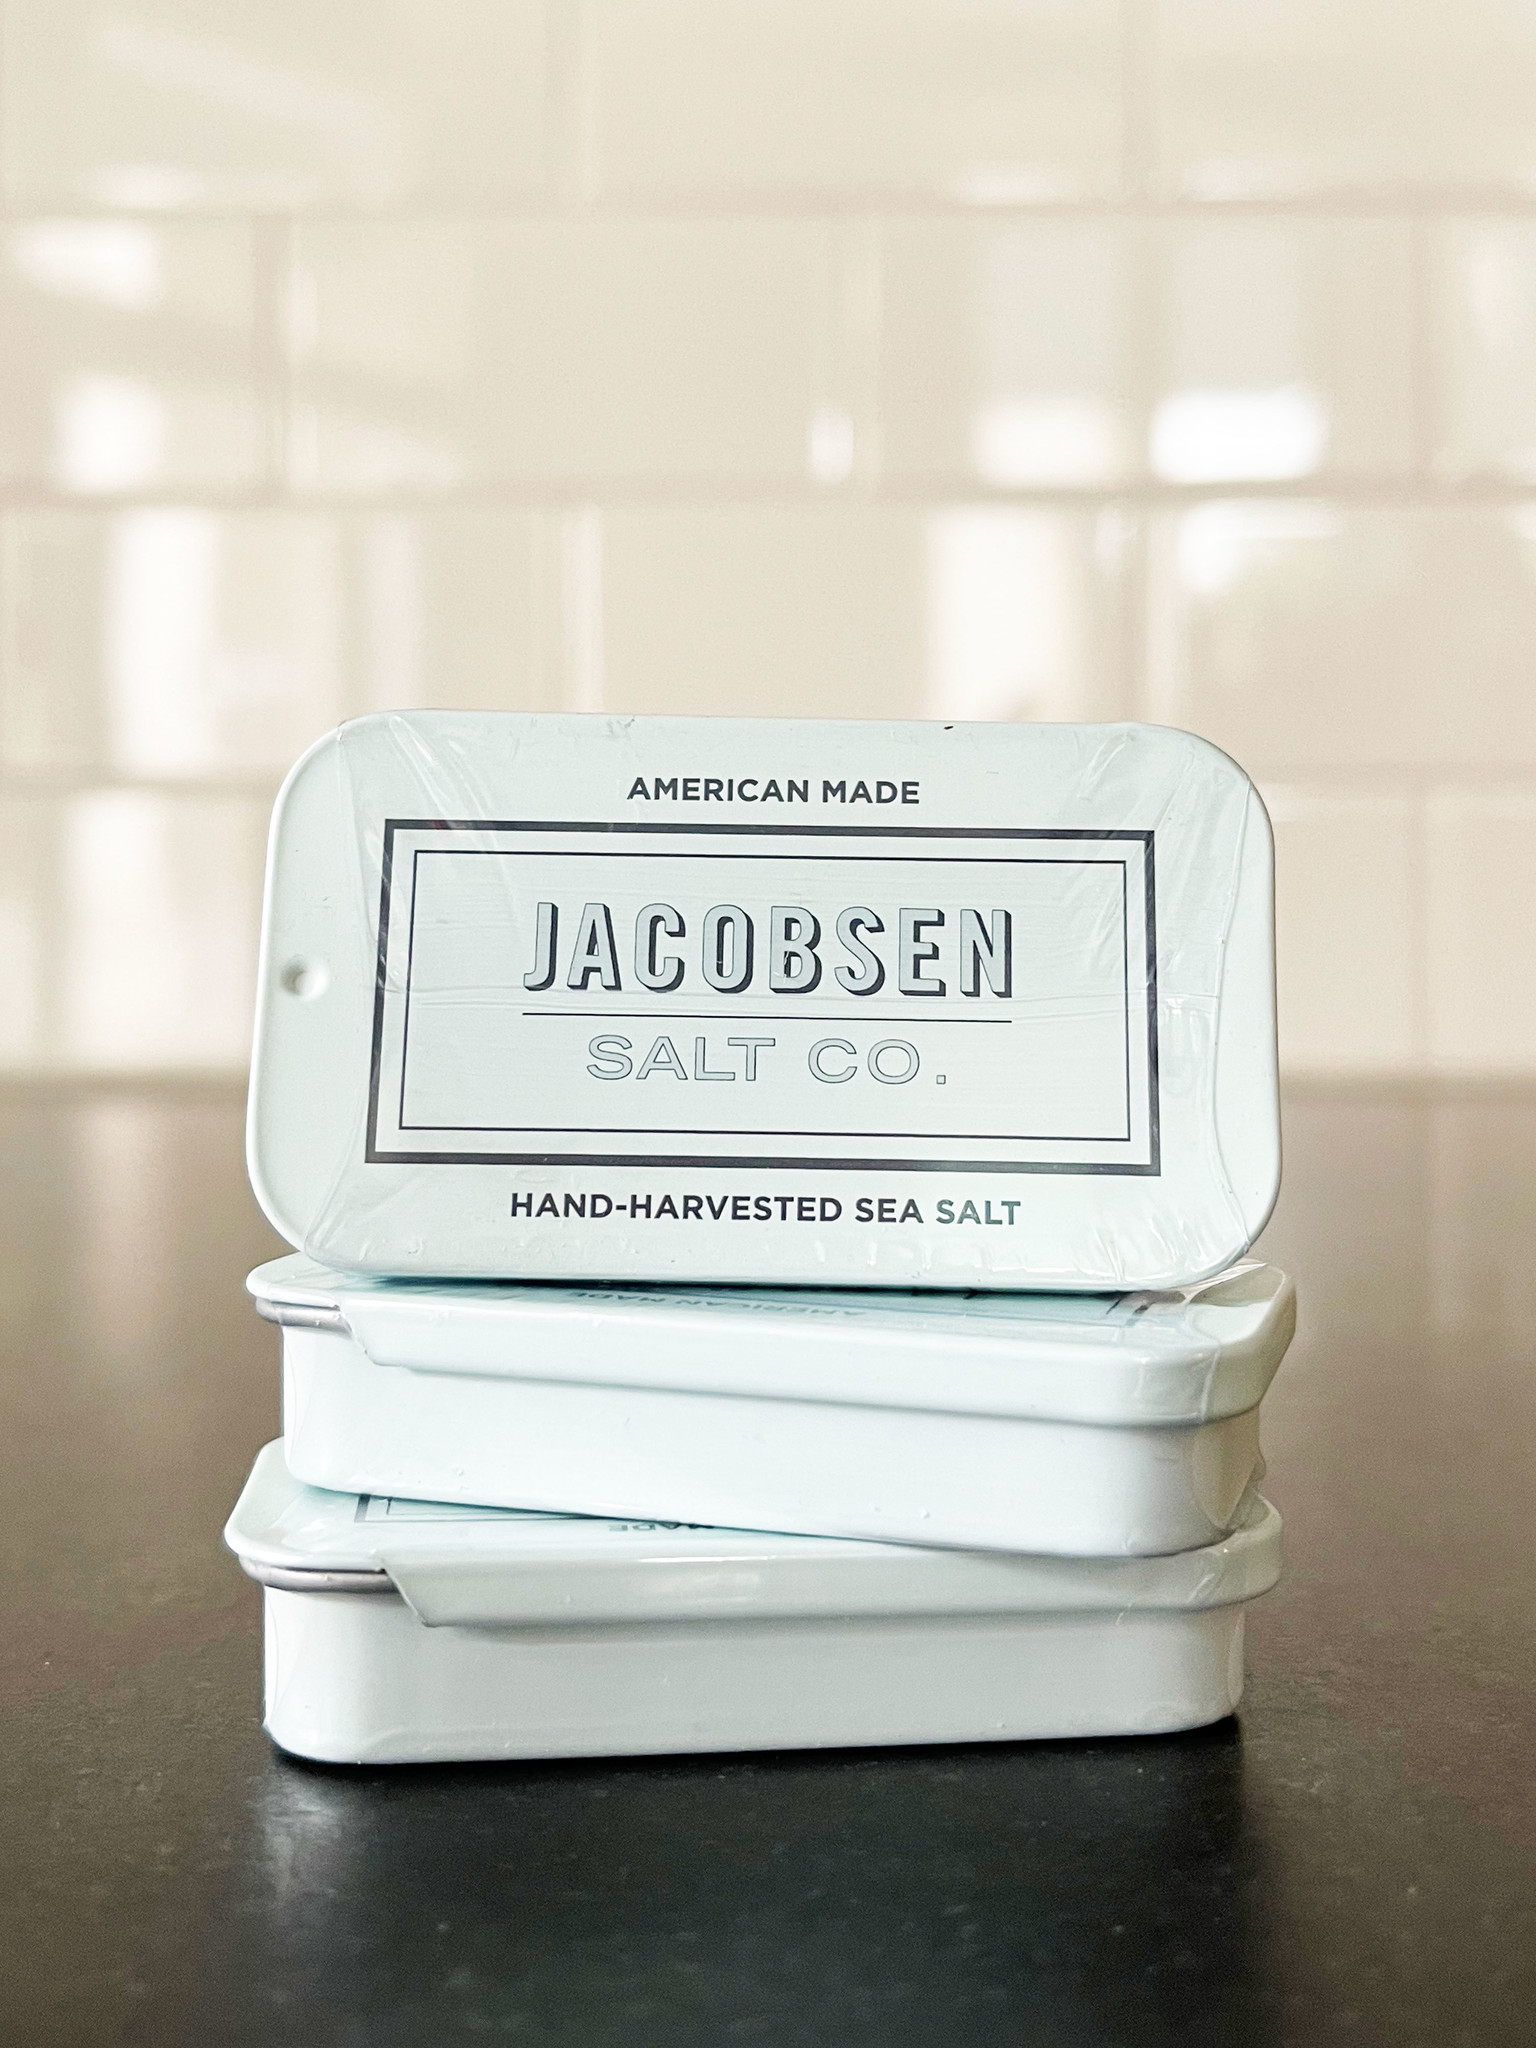 Jacobsen Salt Co. added a new photo. - Jacobsen Salt Co.